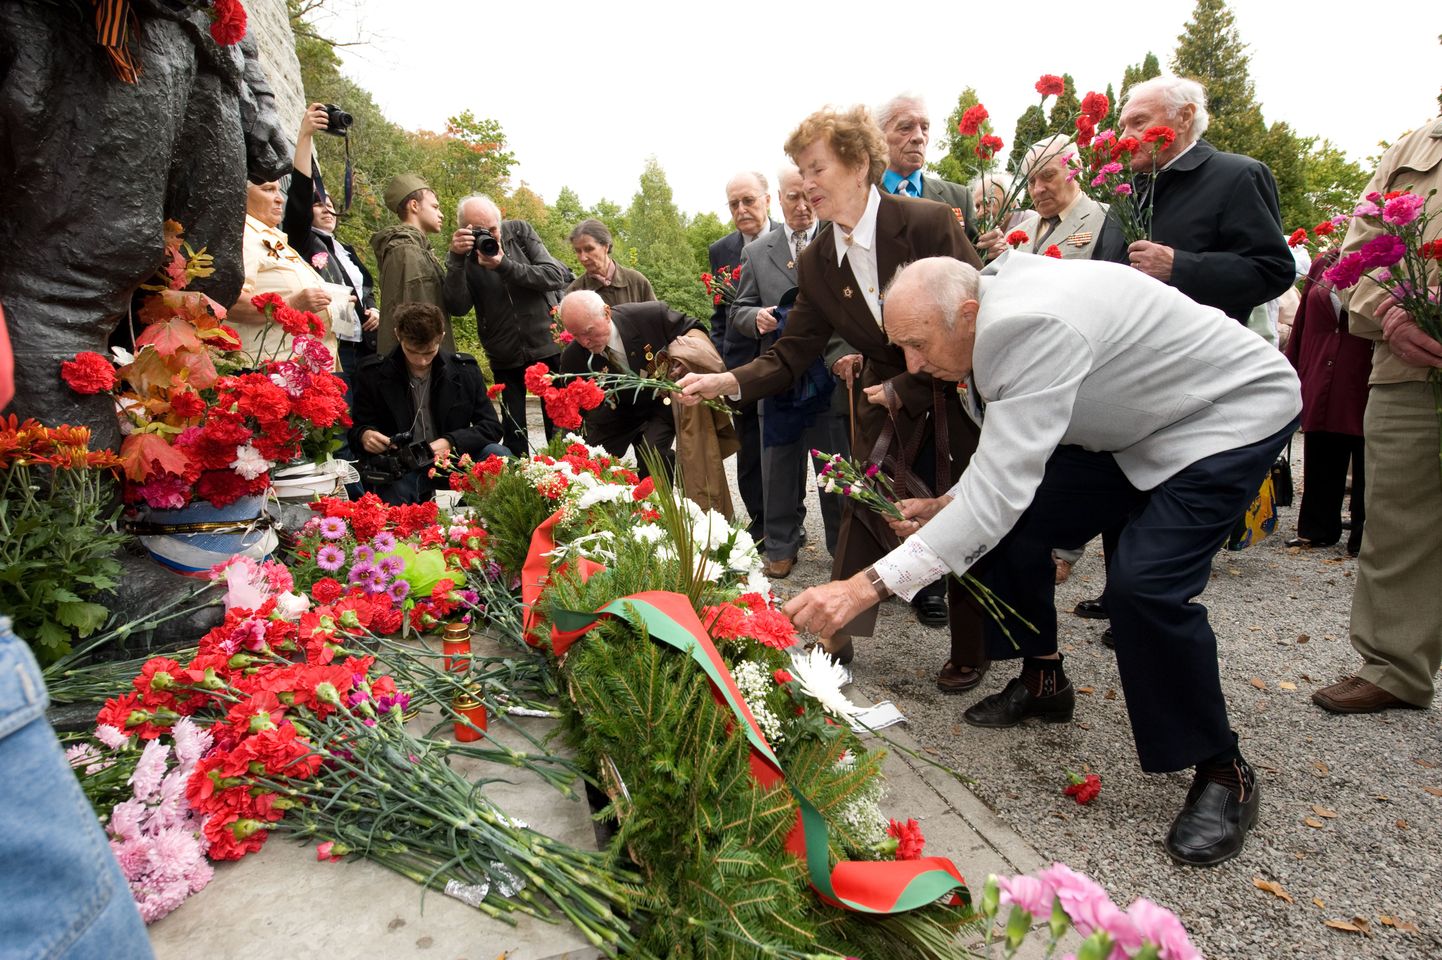 22 сентября у памятника павшим на Военном кладбище Таллинна. Ветераны возлагают цветы к Бронзовому солдату.